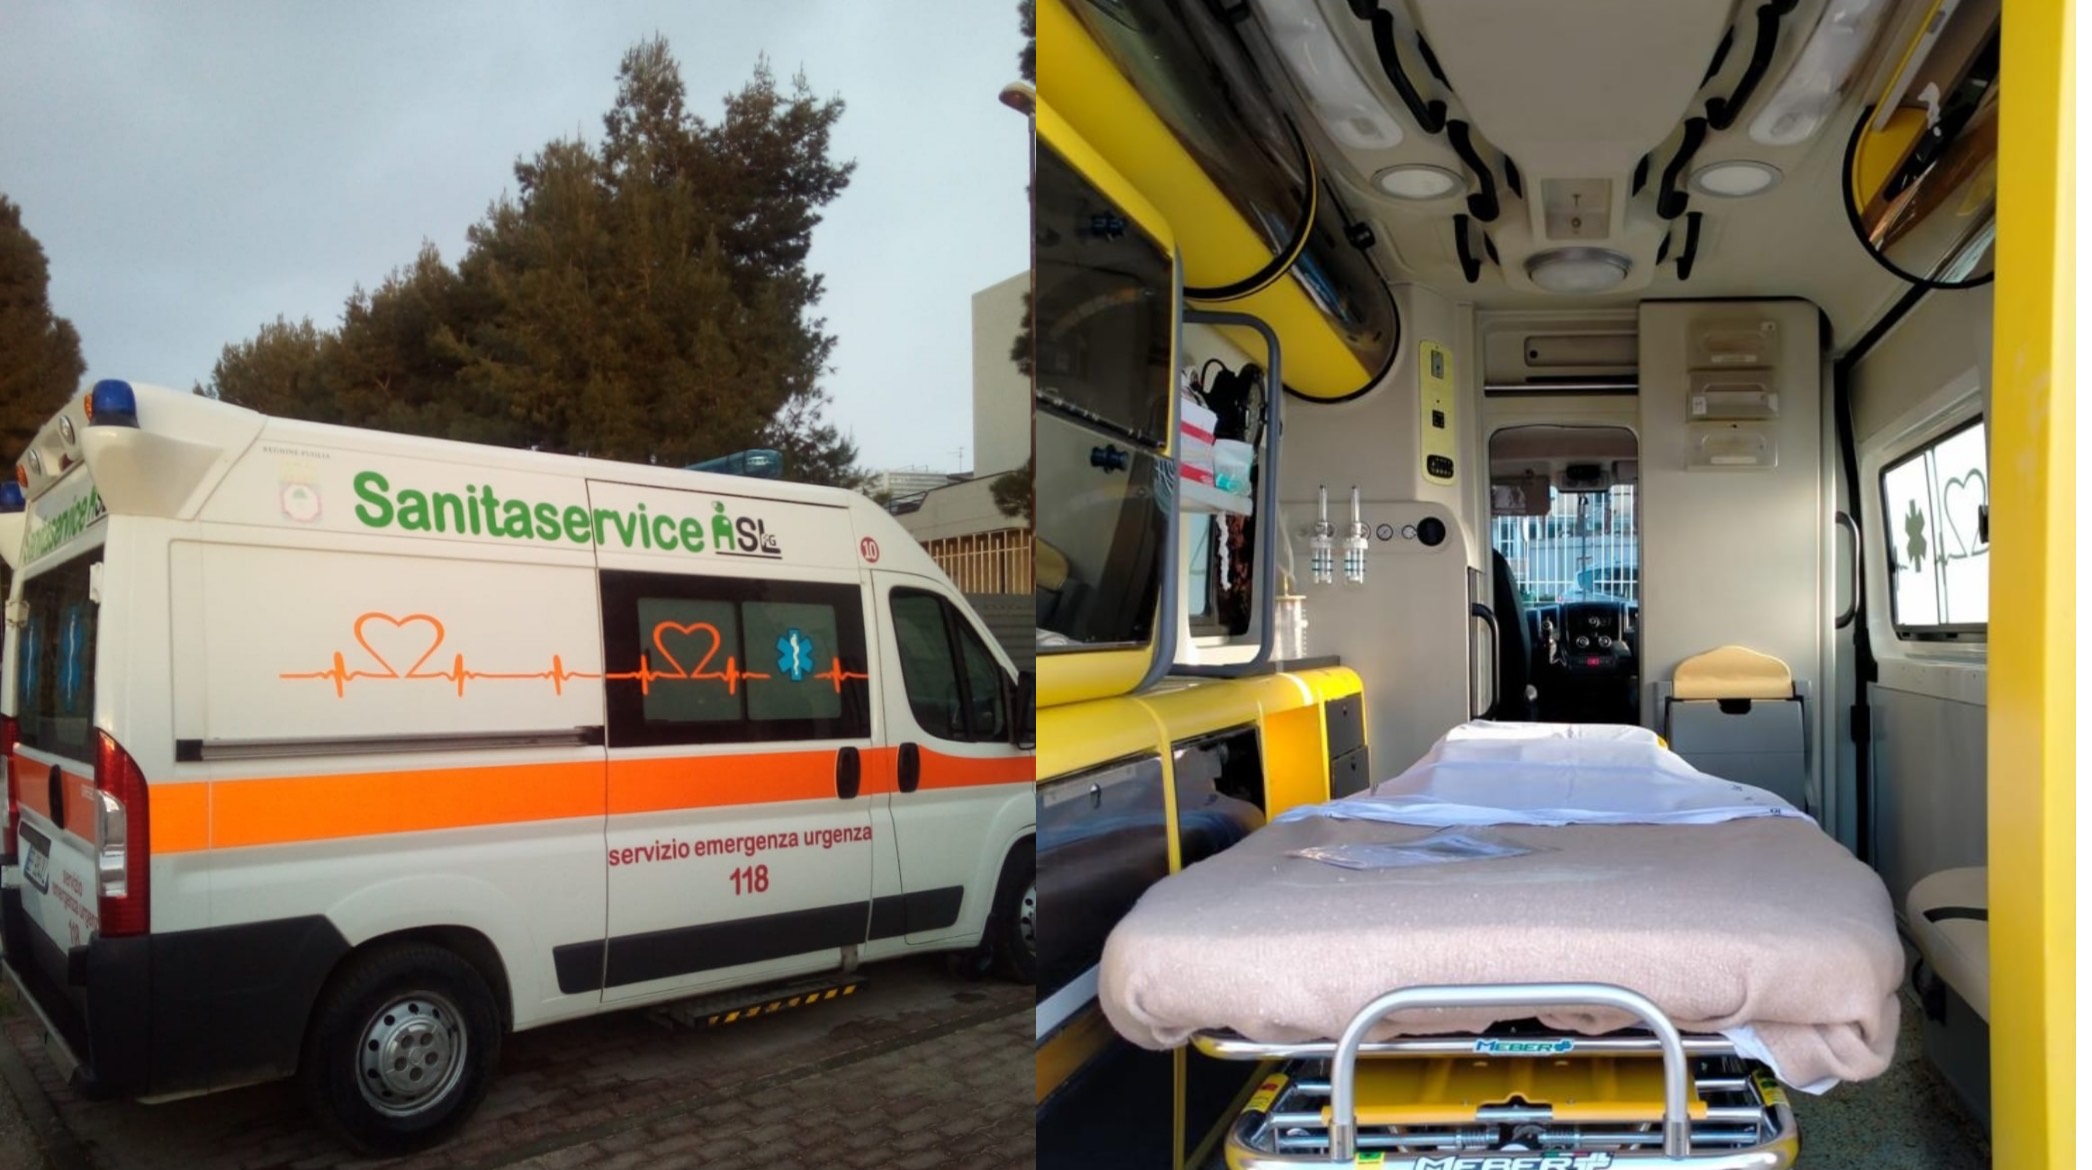 foto 2 - ambulanza bariatrica